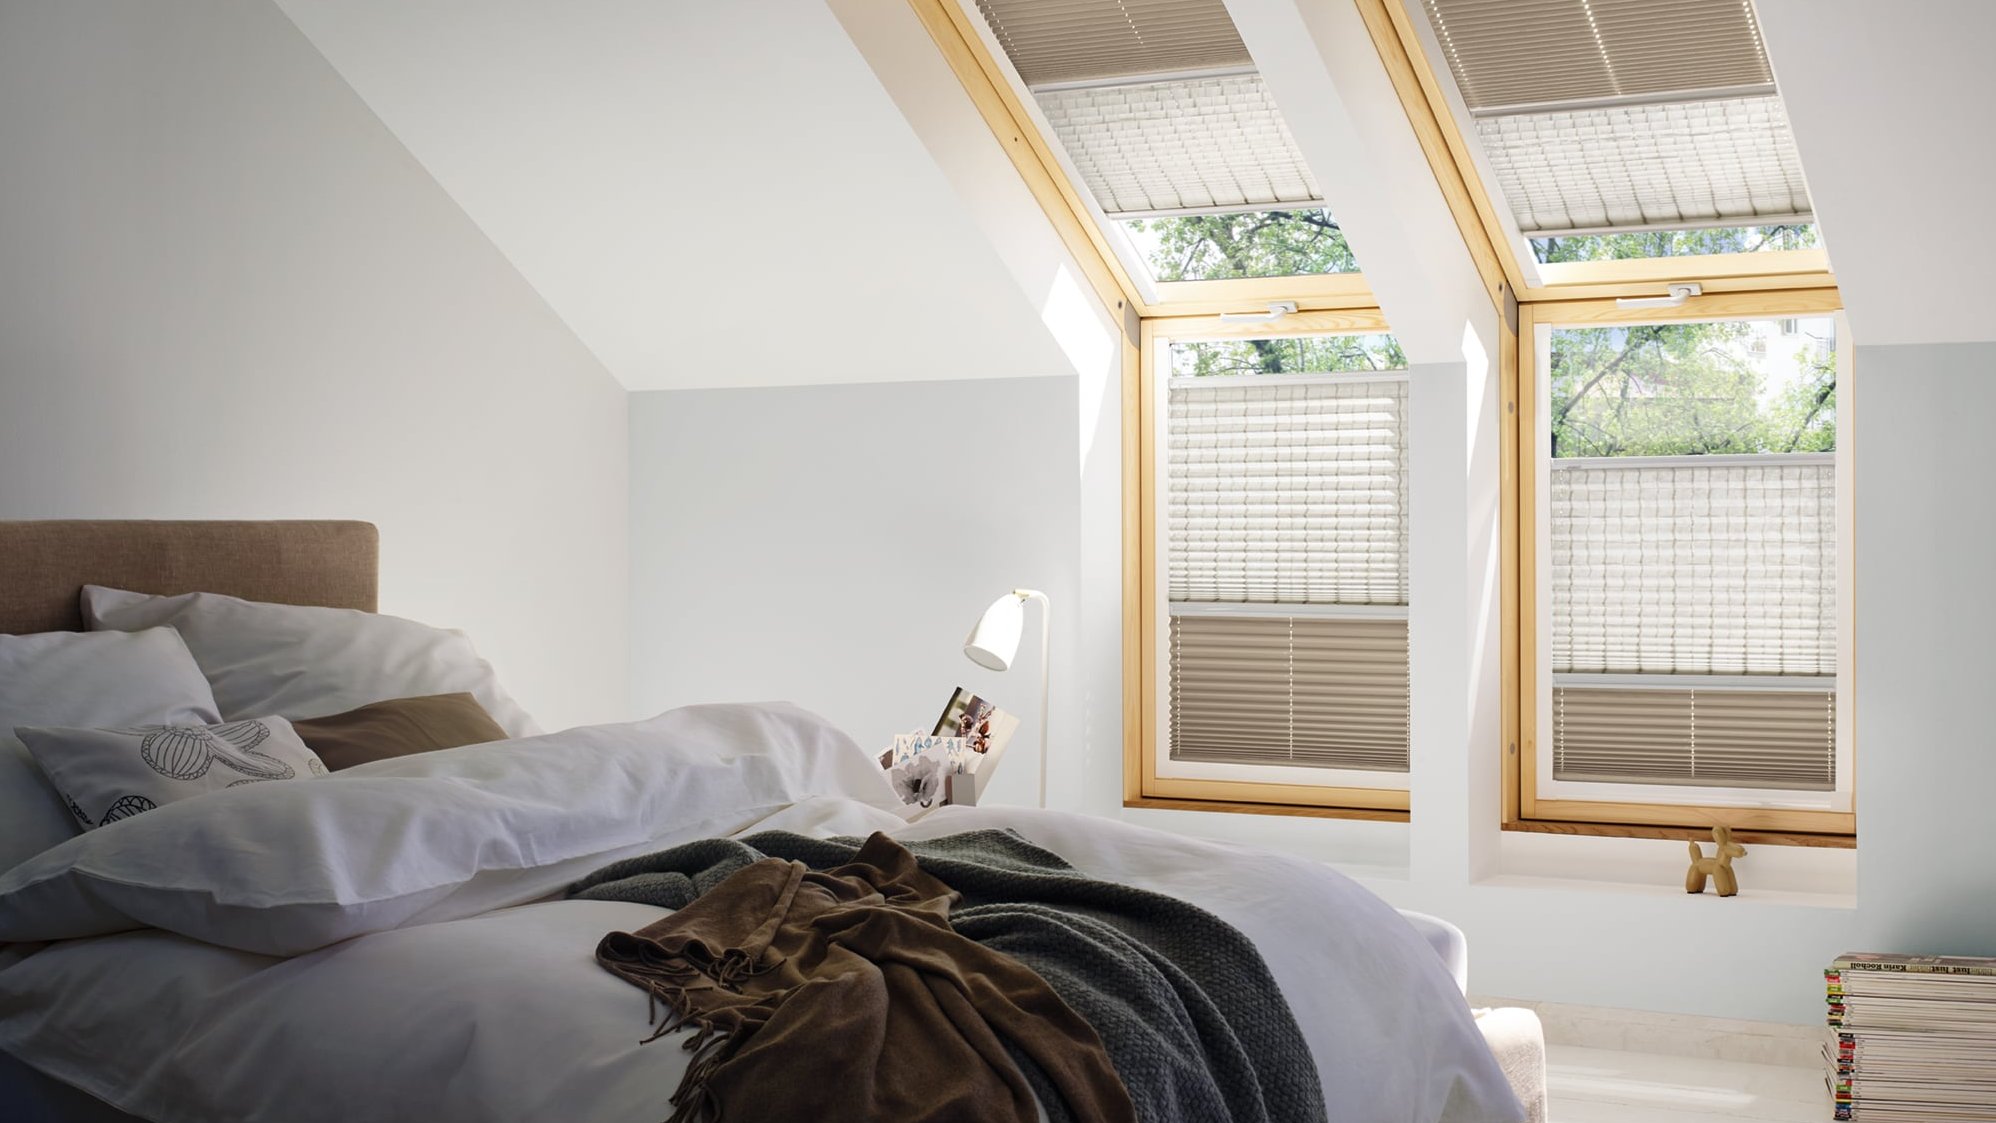 Schlafzimmer mit KADECO Plissee in braun und beige als einzigartiger Sonnenschutz.